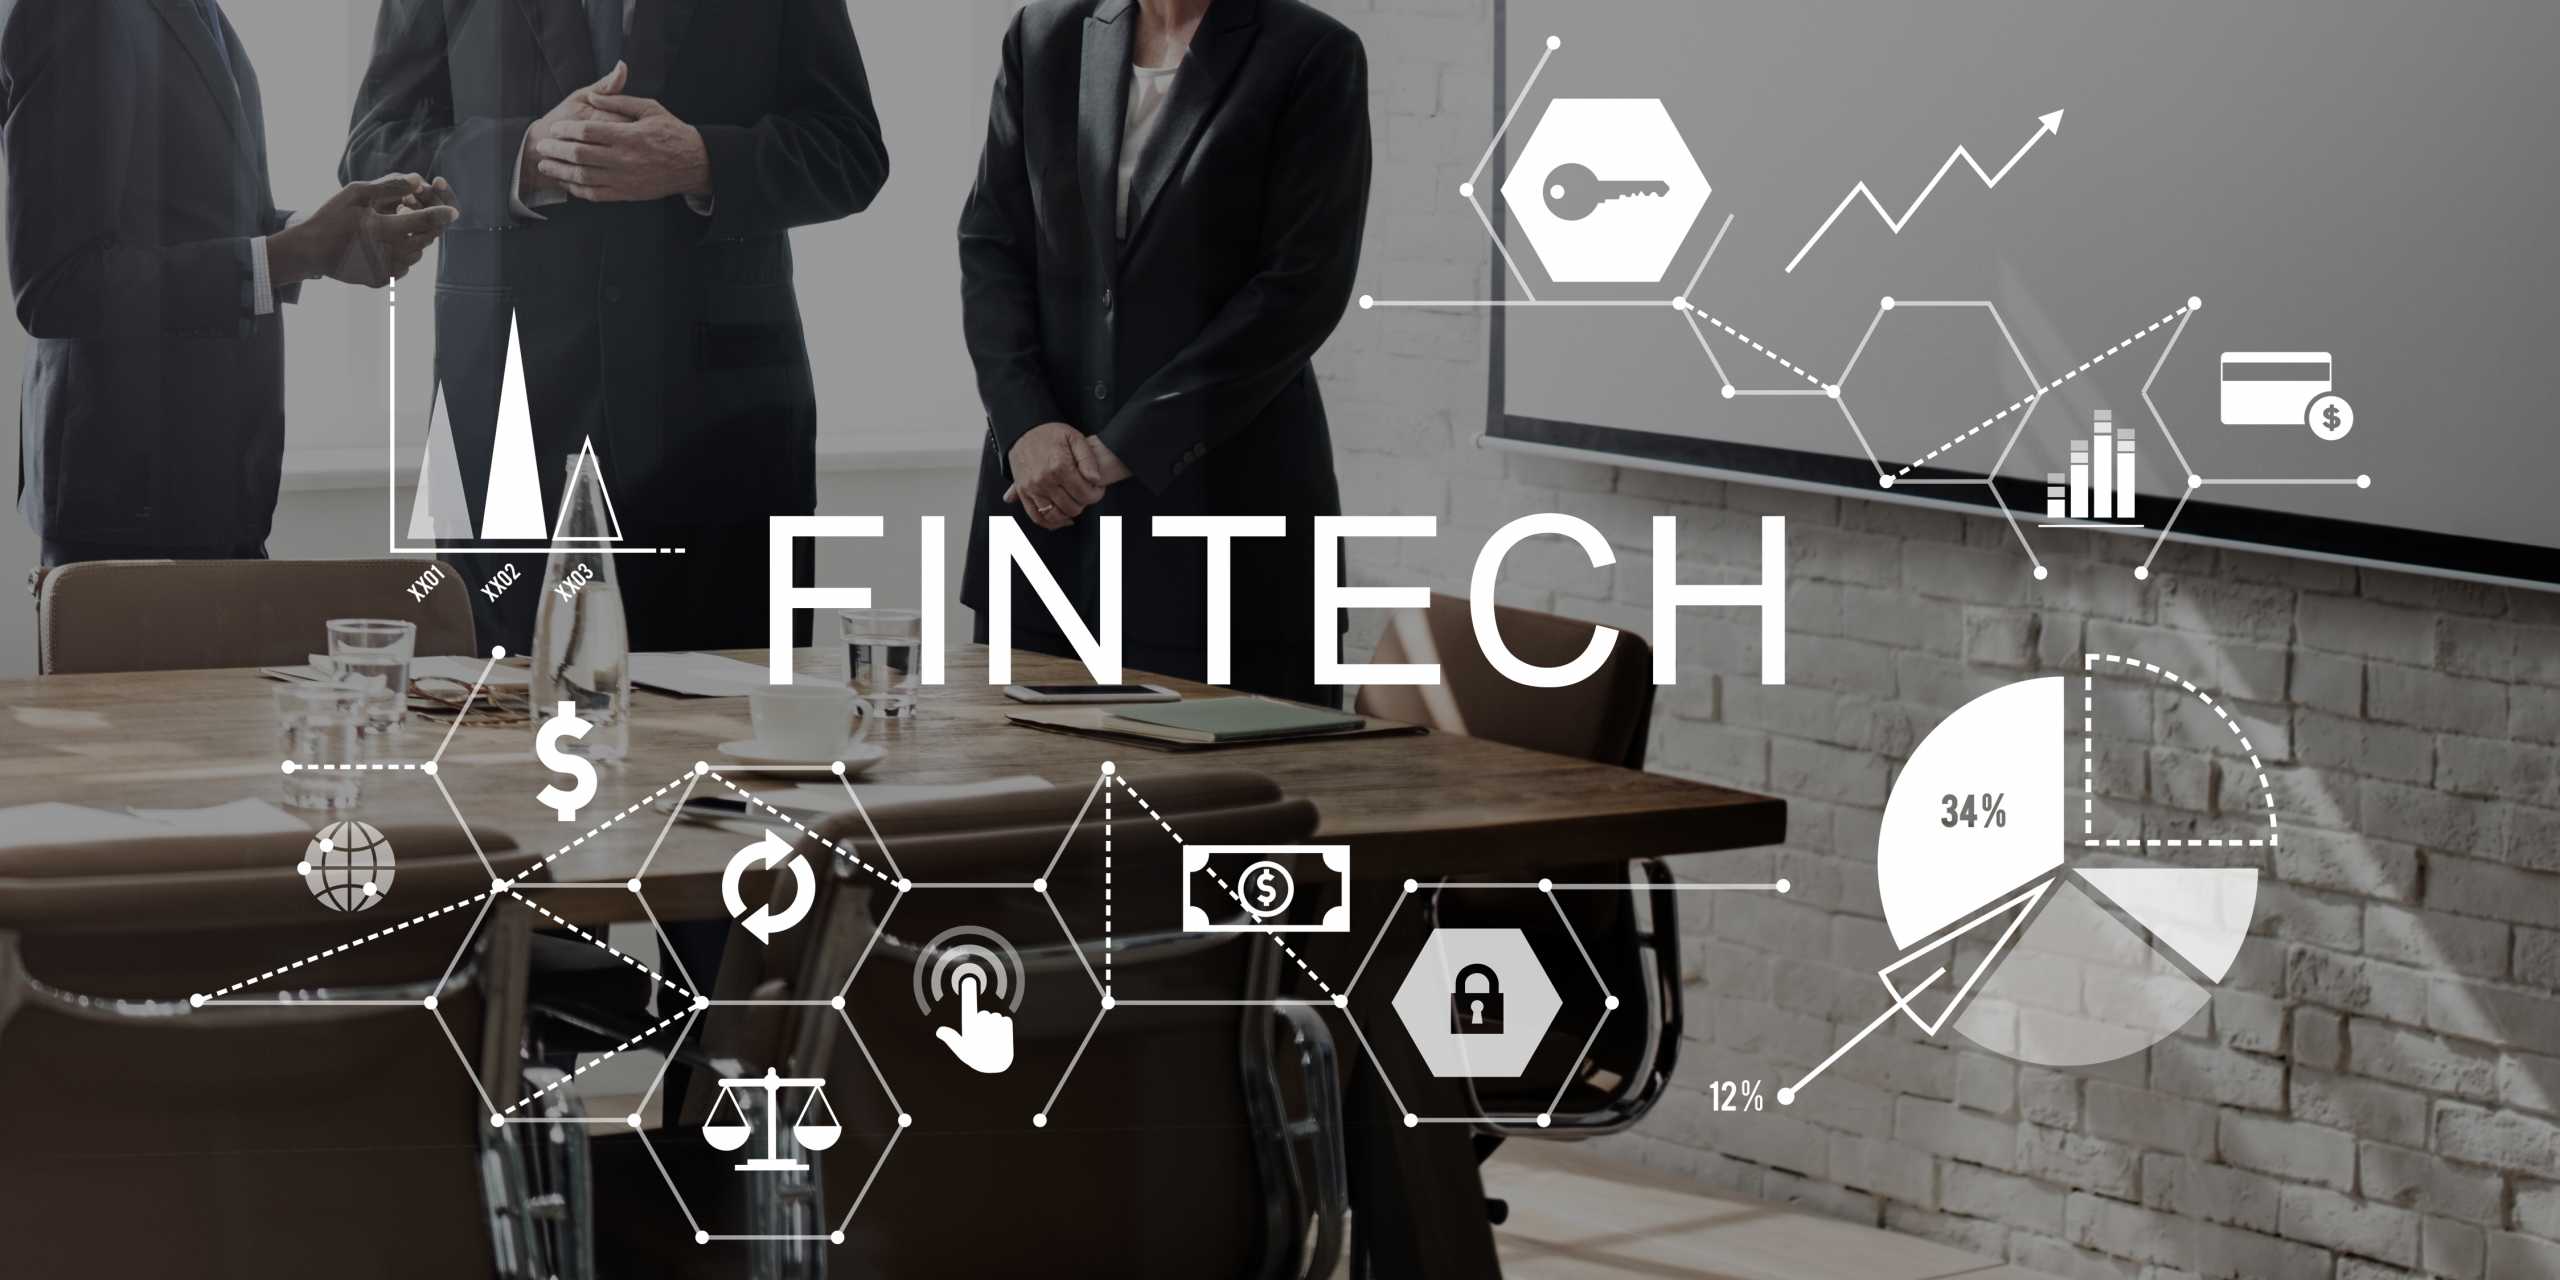 Fintech Investment Financial Internet Technology Concept